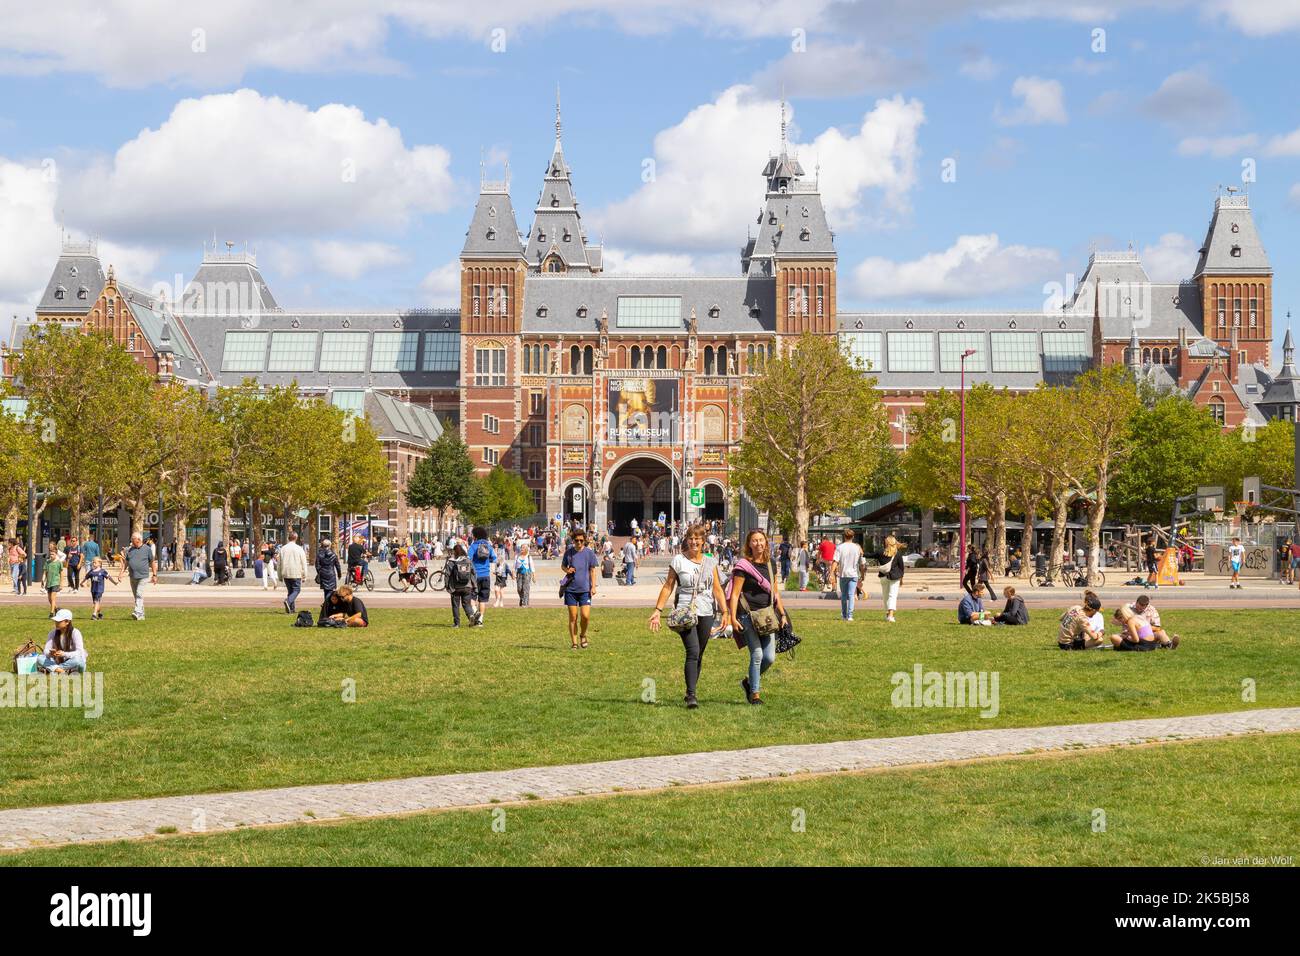 La gente del posto e i turisti potranno trascorrere una giornata di sole nella piazza dei musei della capitale olandese Amsterdam. Foto Stock